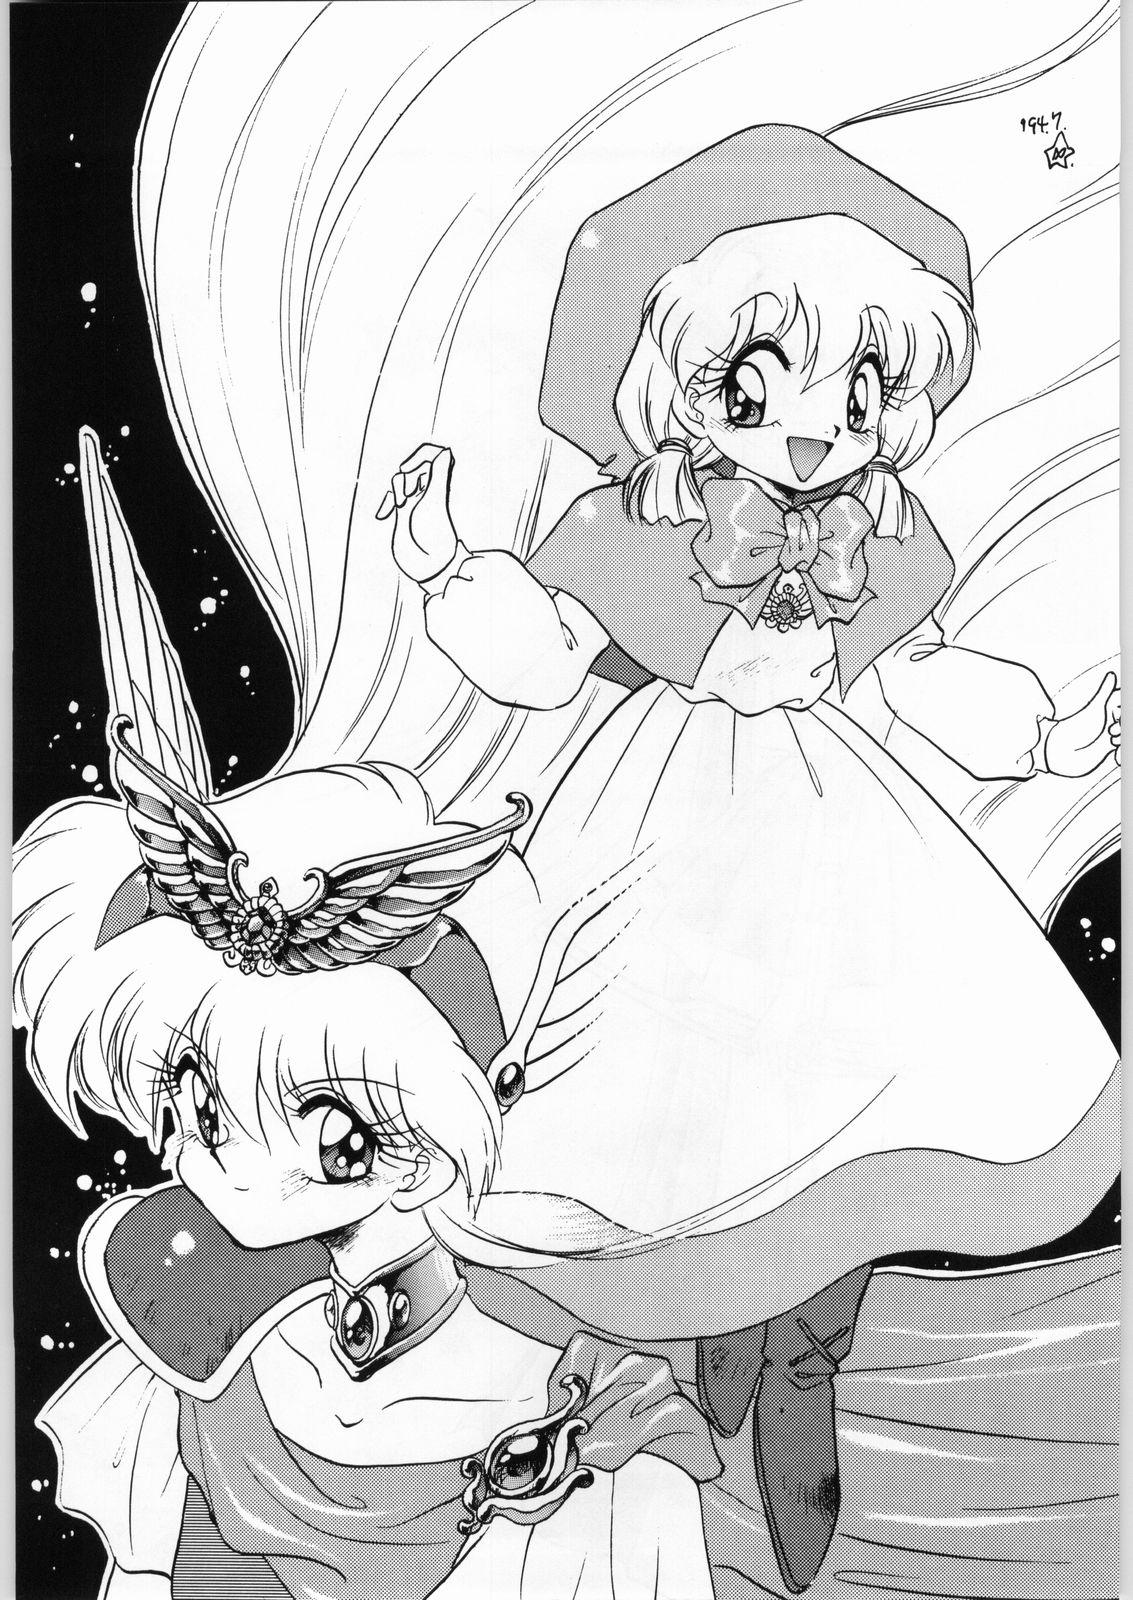 Dildo Dance of Princess 3 - Sailor moon Tenchi muyo Akazukin cha cha Minky momo Ng knight lamune and 40 Chupa - Page 4